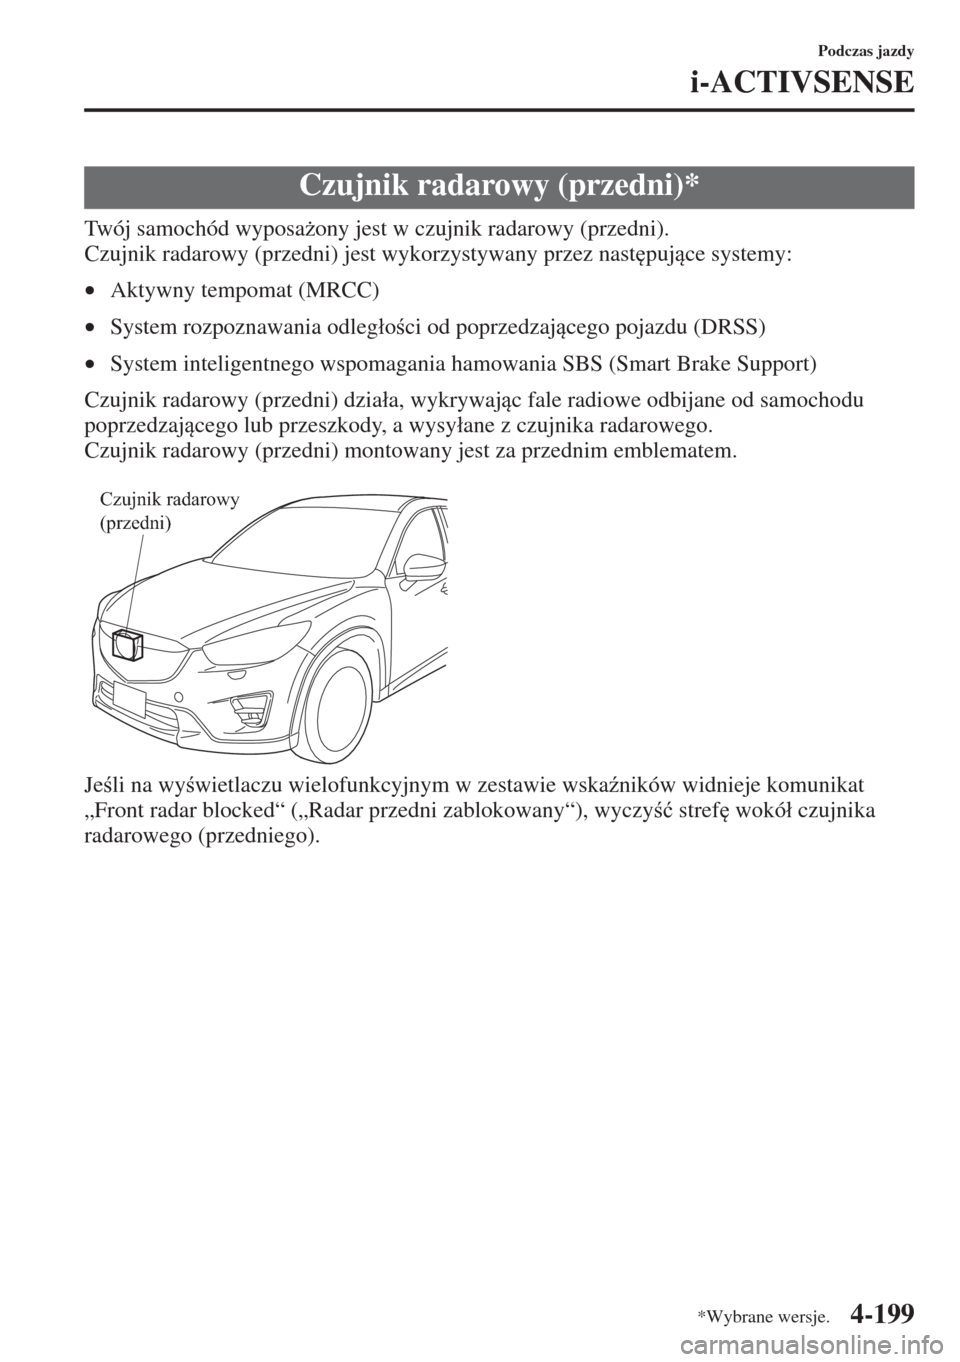 MAZDA MODEL CX-5 2015  Instrukcja Obsługi (in Polish) 4-199
Podczas jazdy
i-ACTIVSENSE
Twój samochód wyposa*ony jest w czujnik radarowy (przedni).
Czujnik radarowy (przedni) jest wykorzystywany przez nast
pujce systemy:
•Aktywny tempomat (MRCC)
�